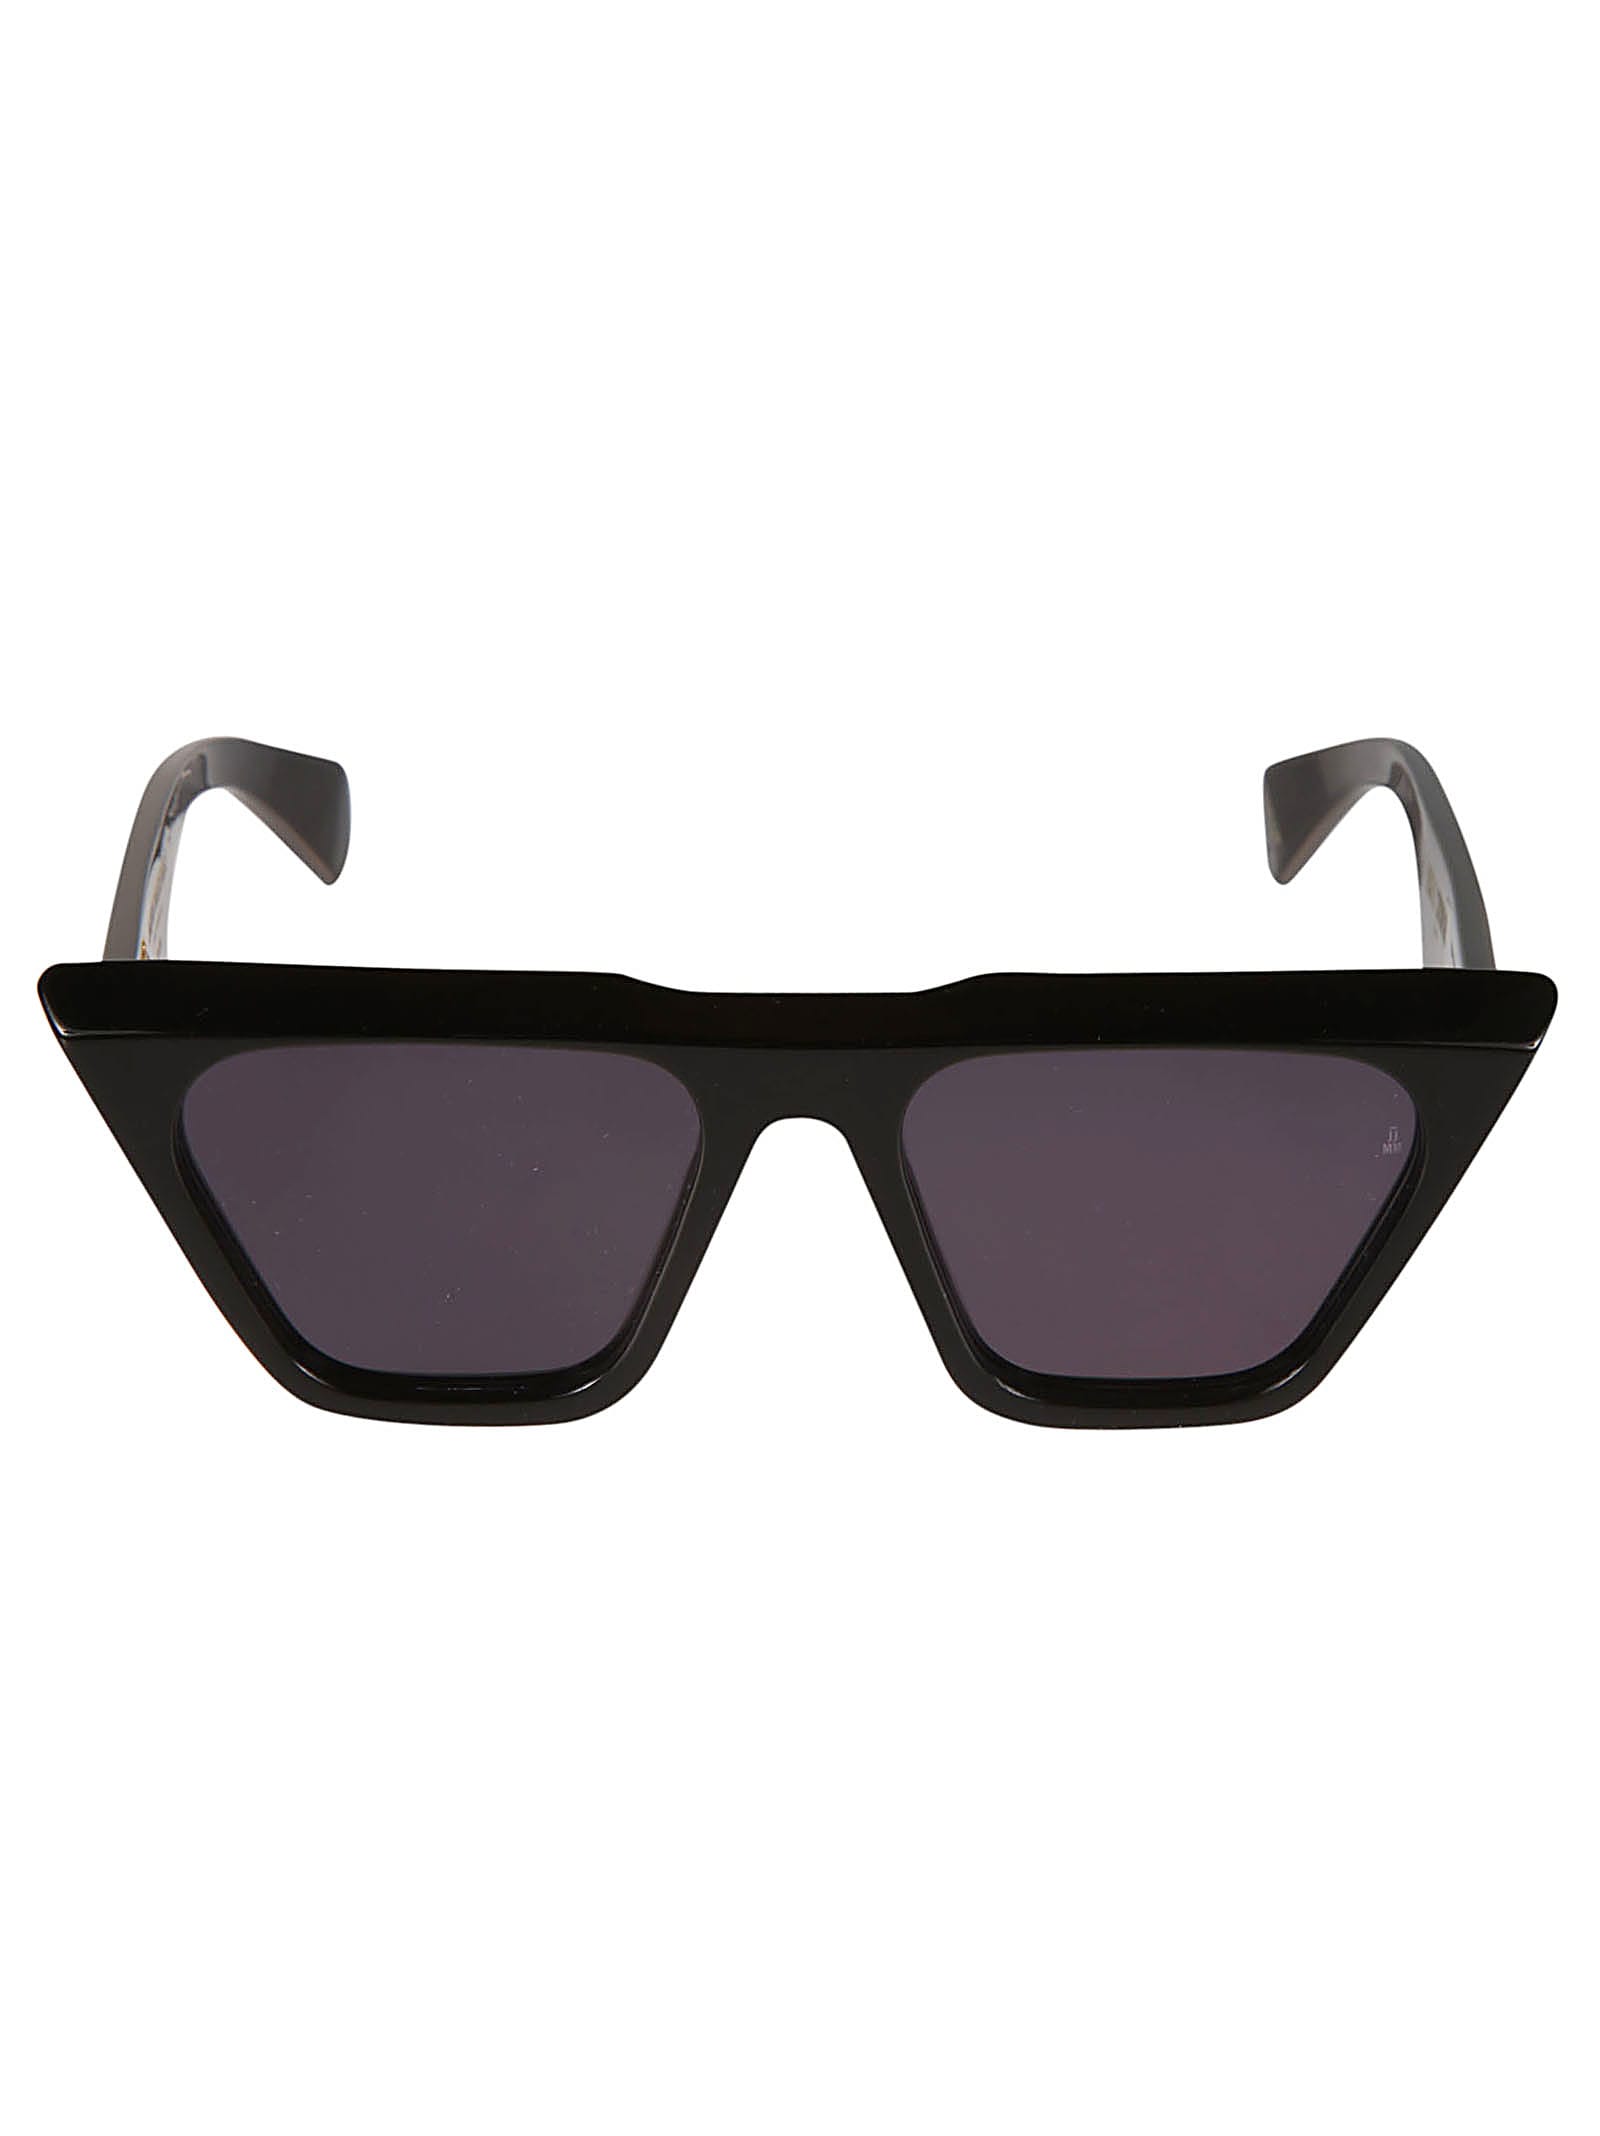 Jacques Marie Mage Eva Sunglasses In Black